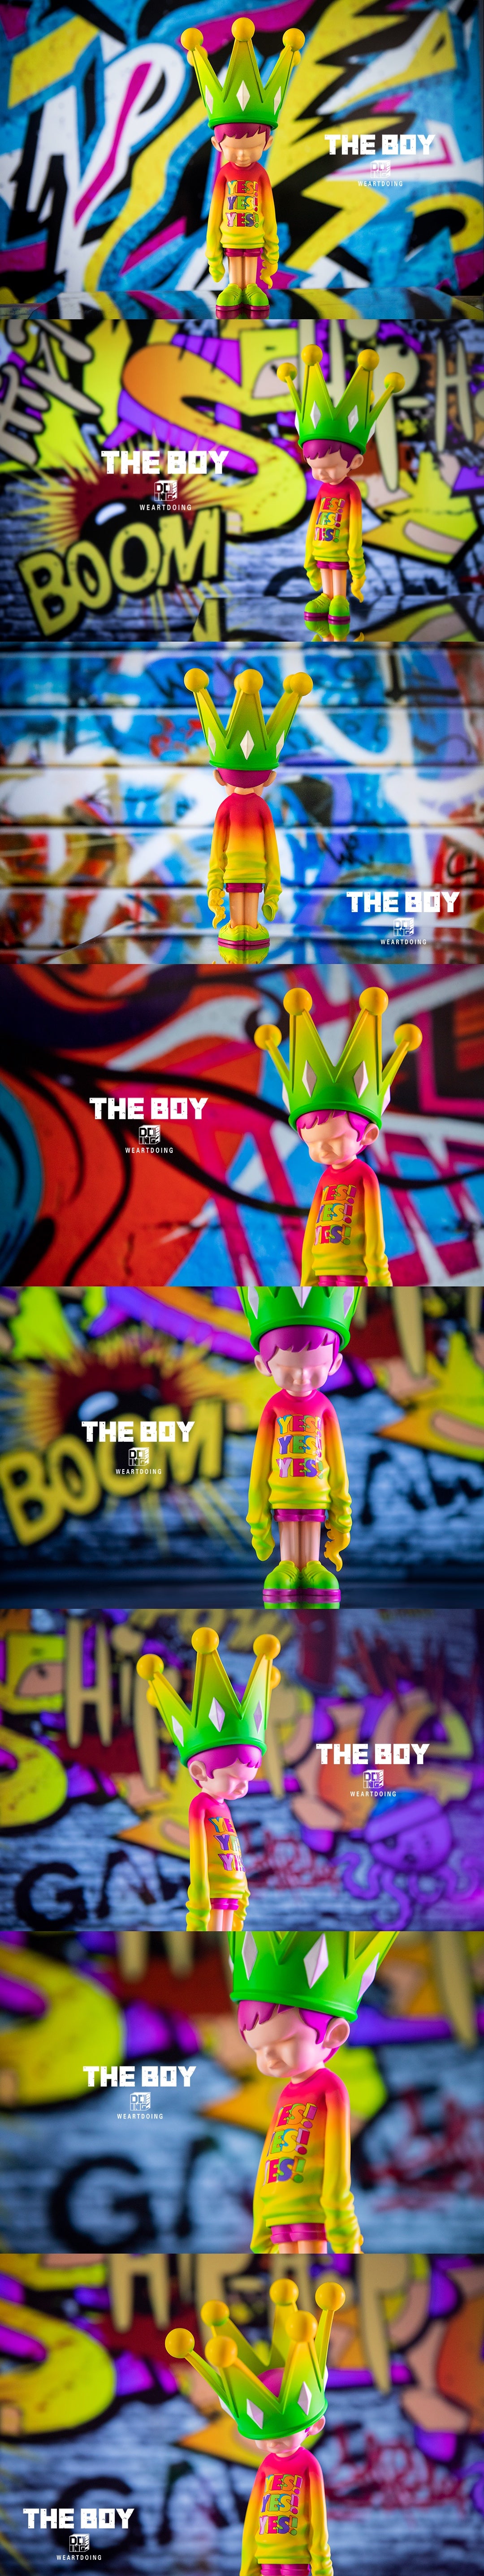 幻童-荧光时代 The Boy- Neon